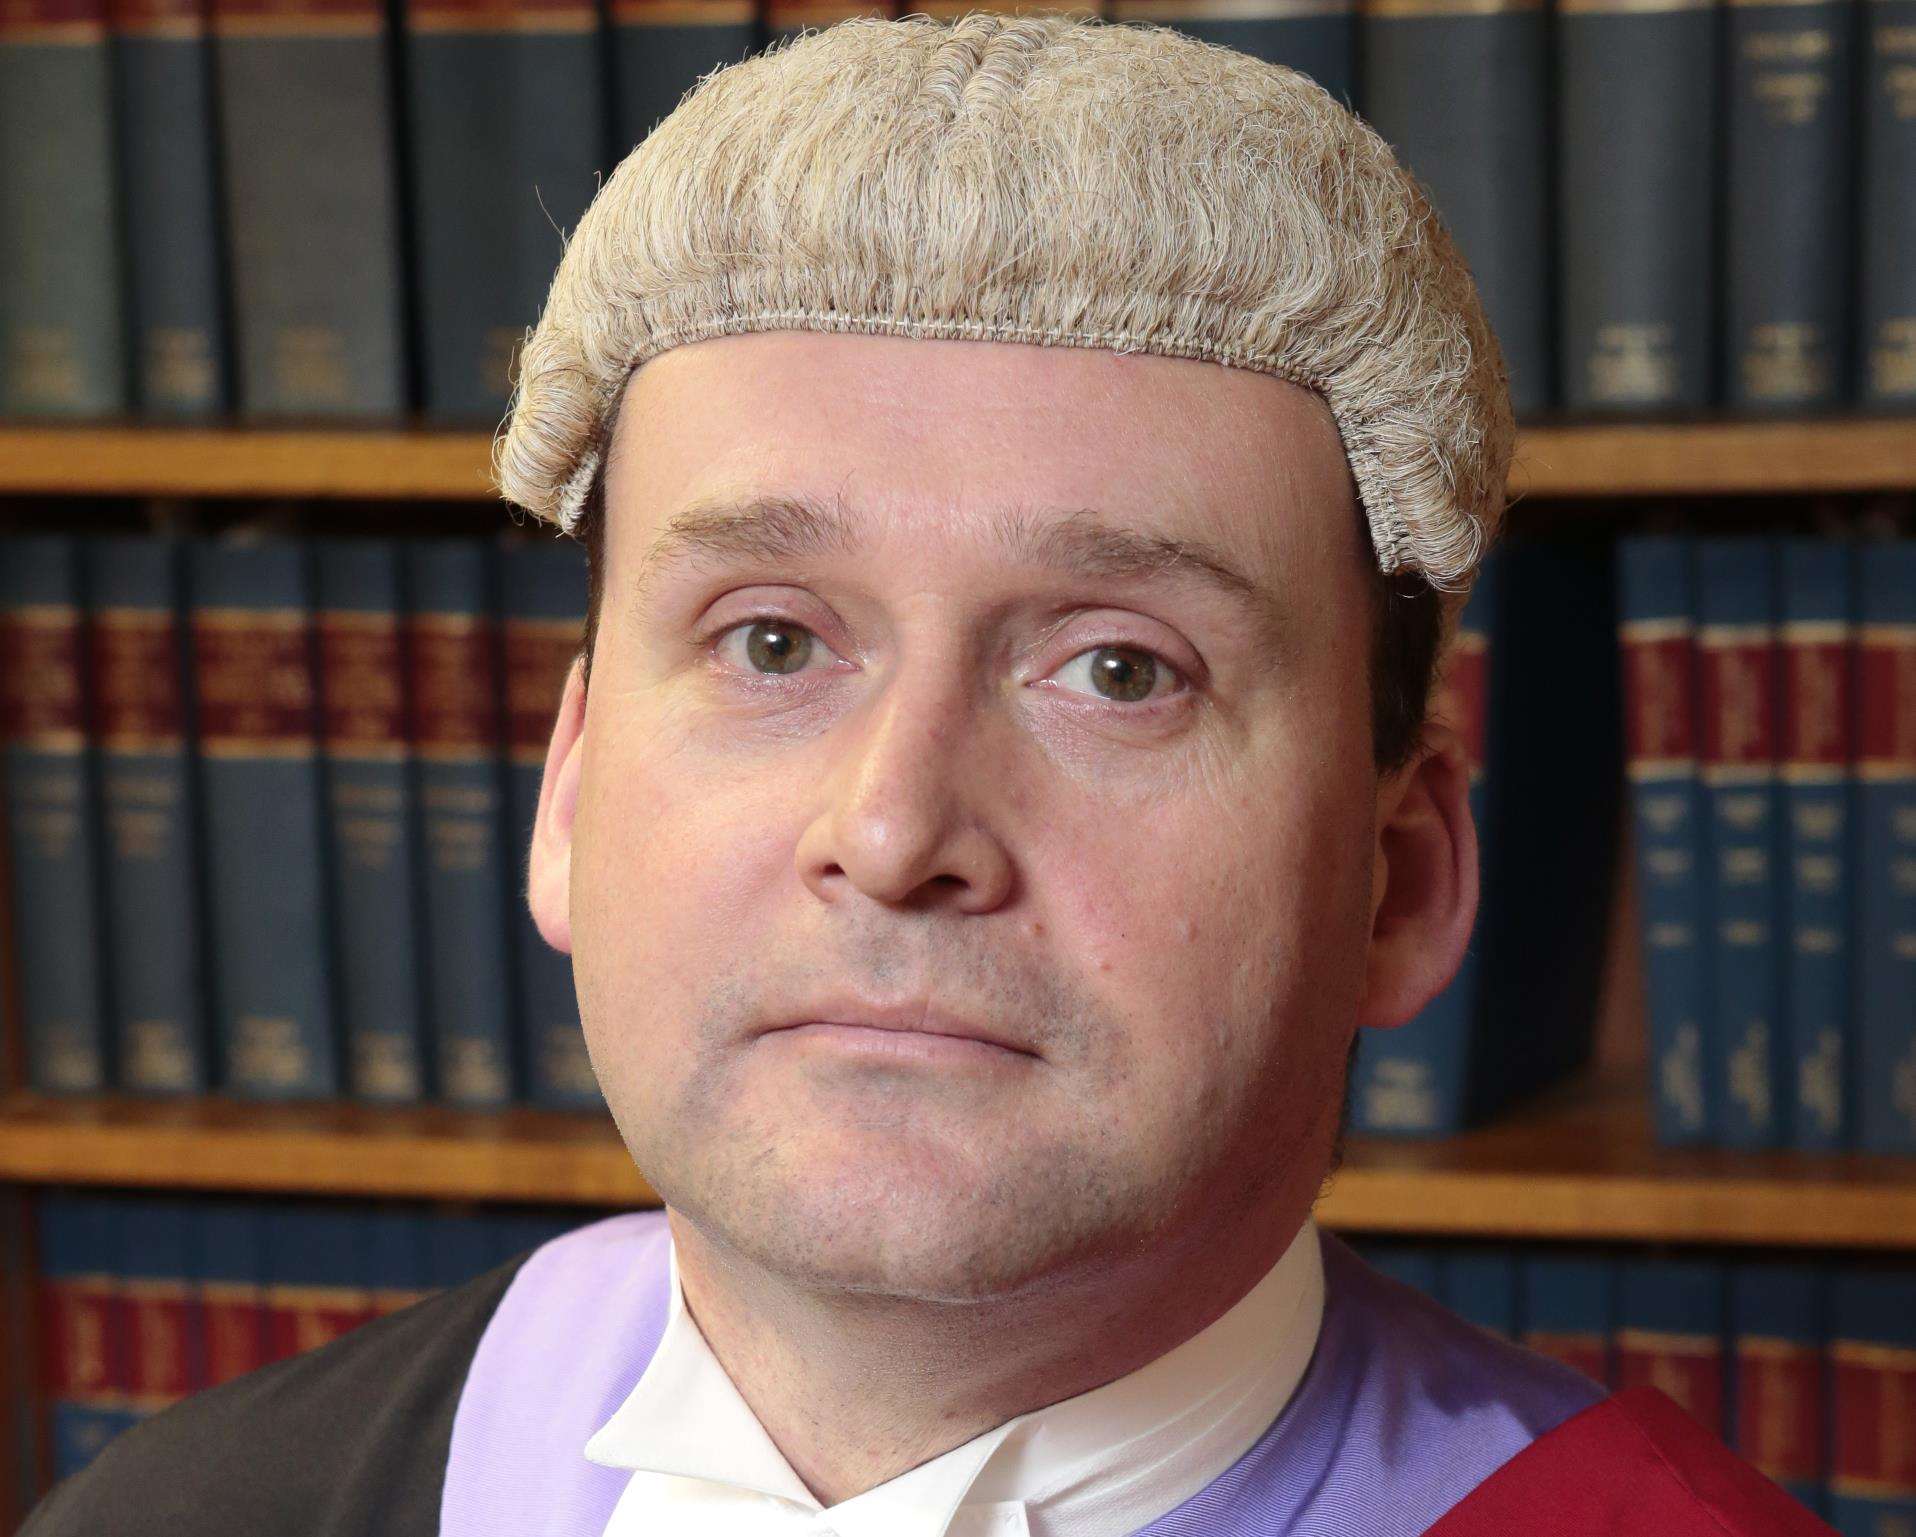 Judge Julian Smith described the sex trade as "morally reprehensible and exploitable"